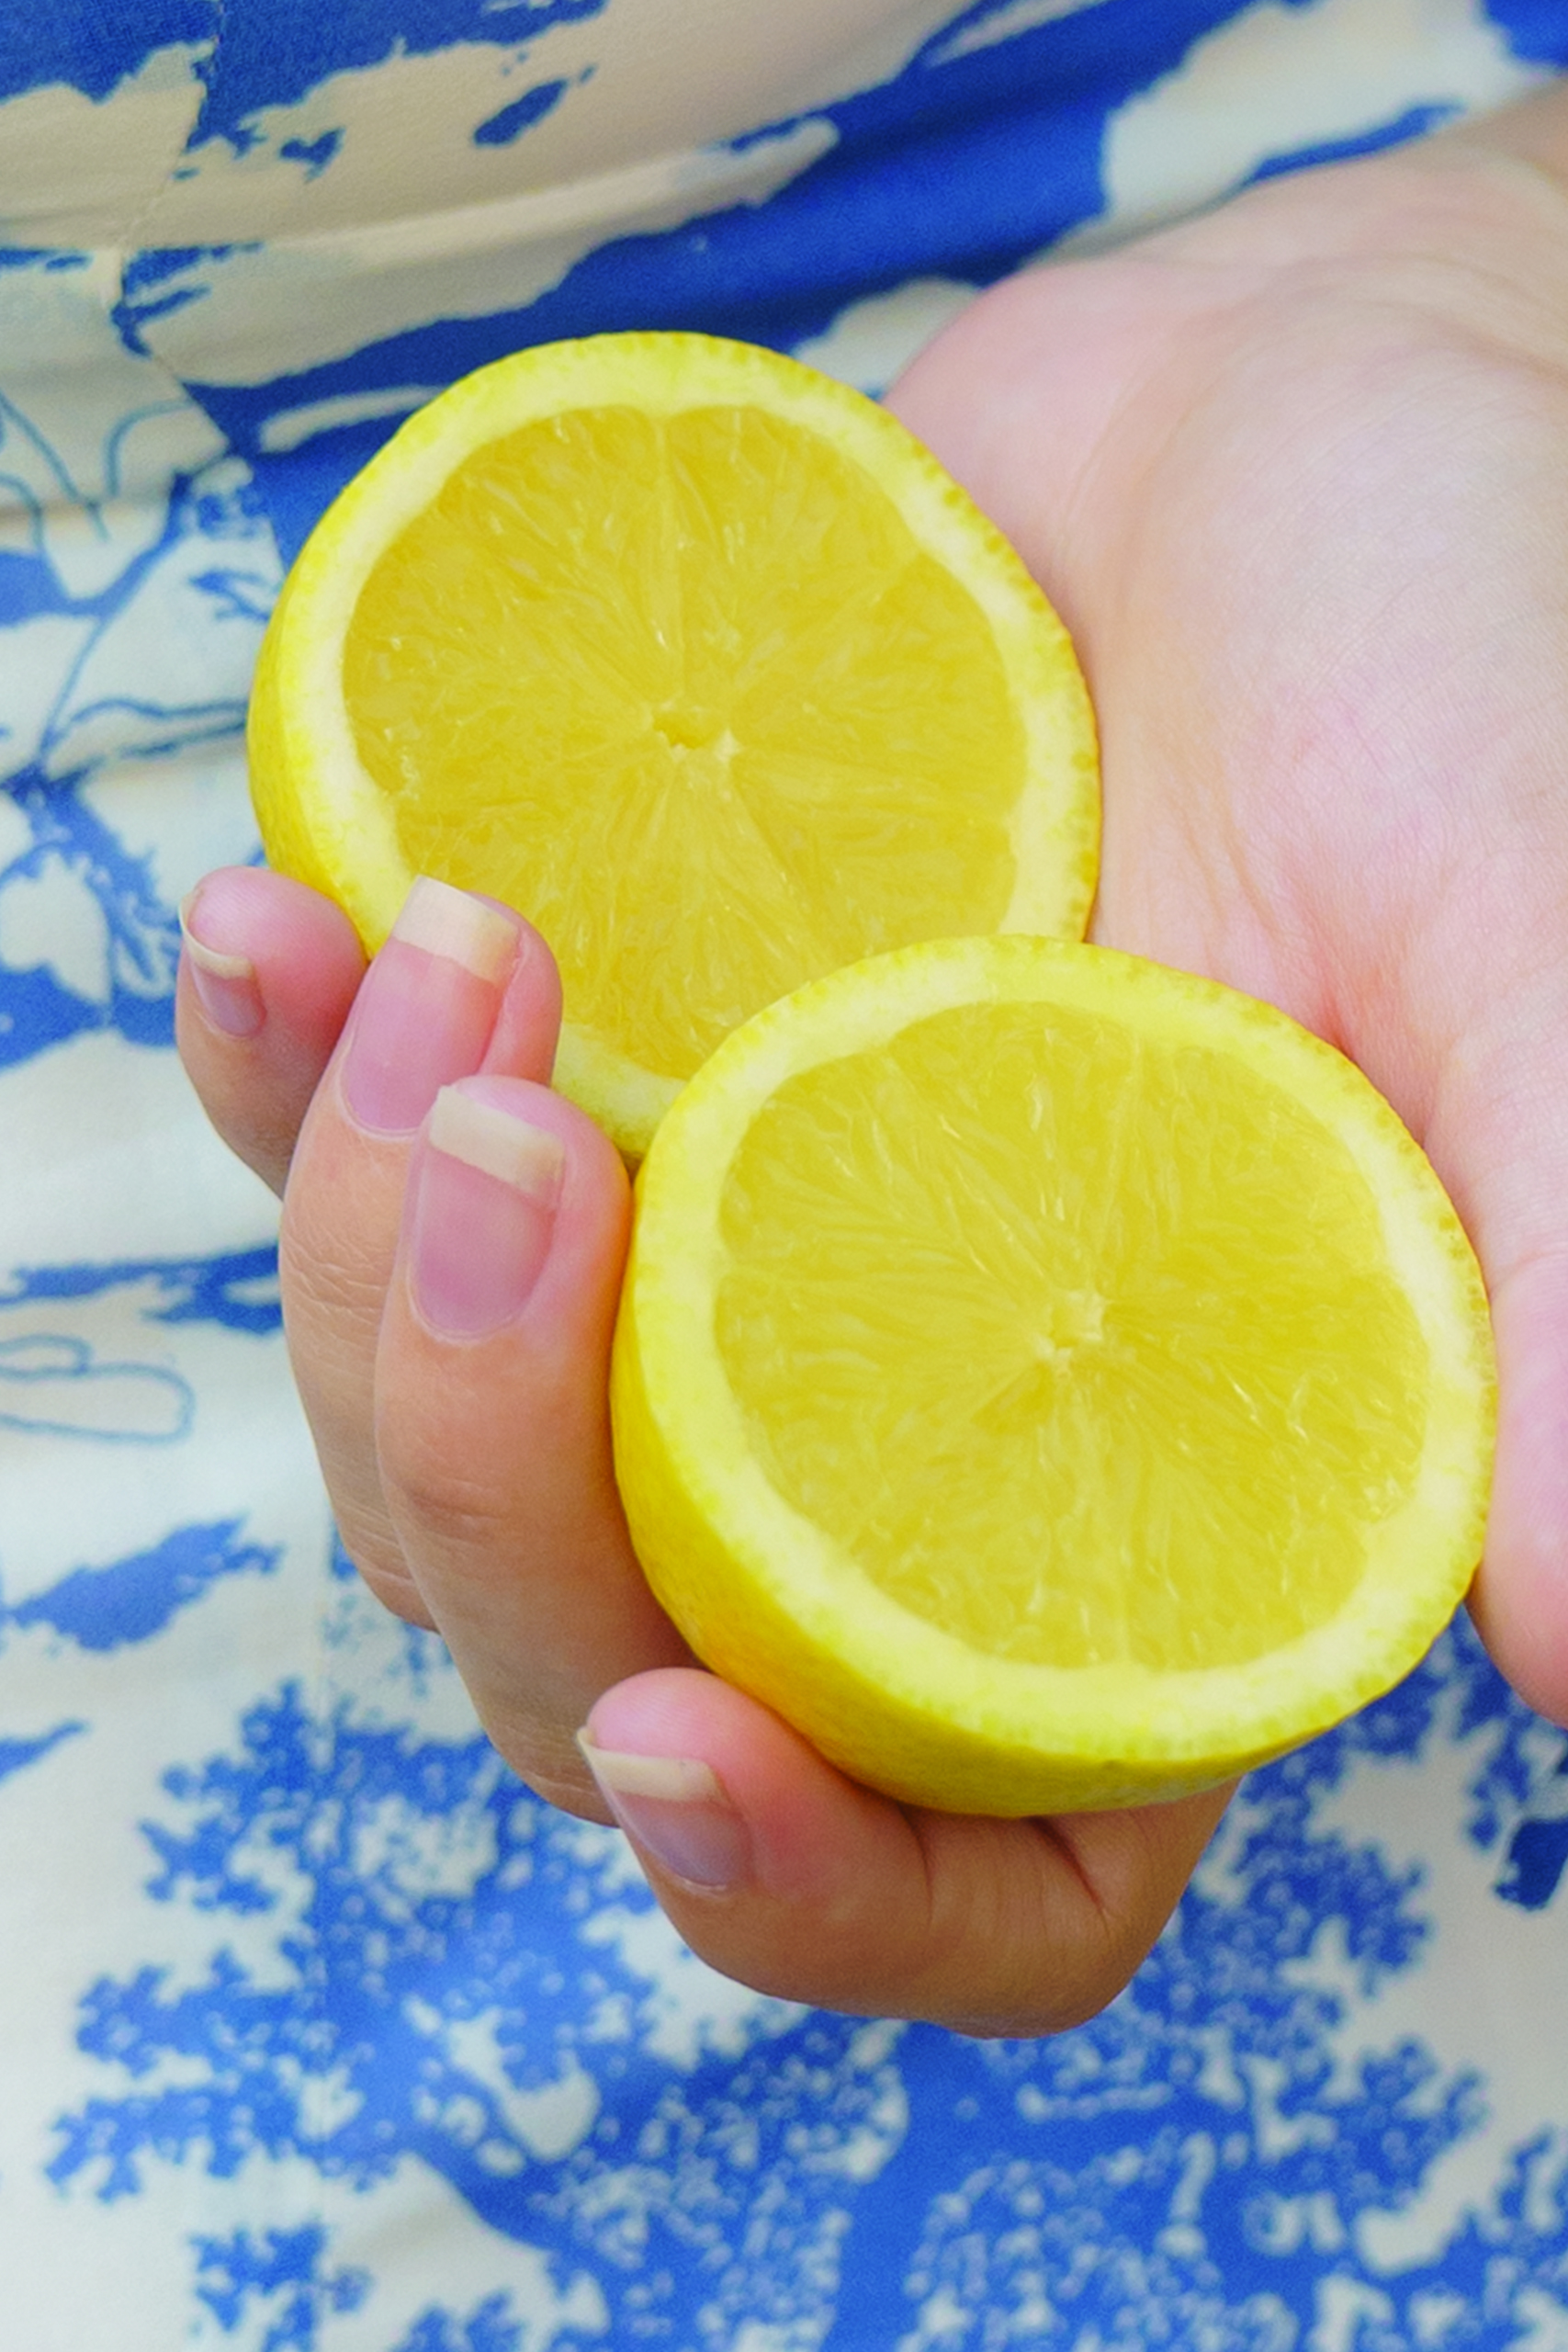 Two lemon halves in hand